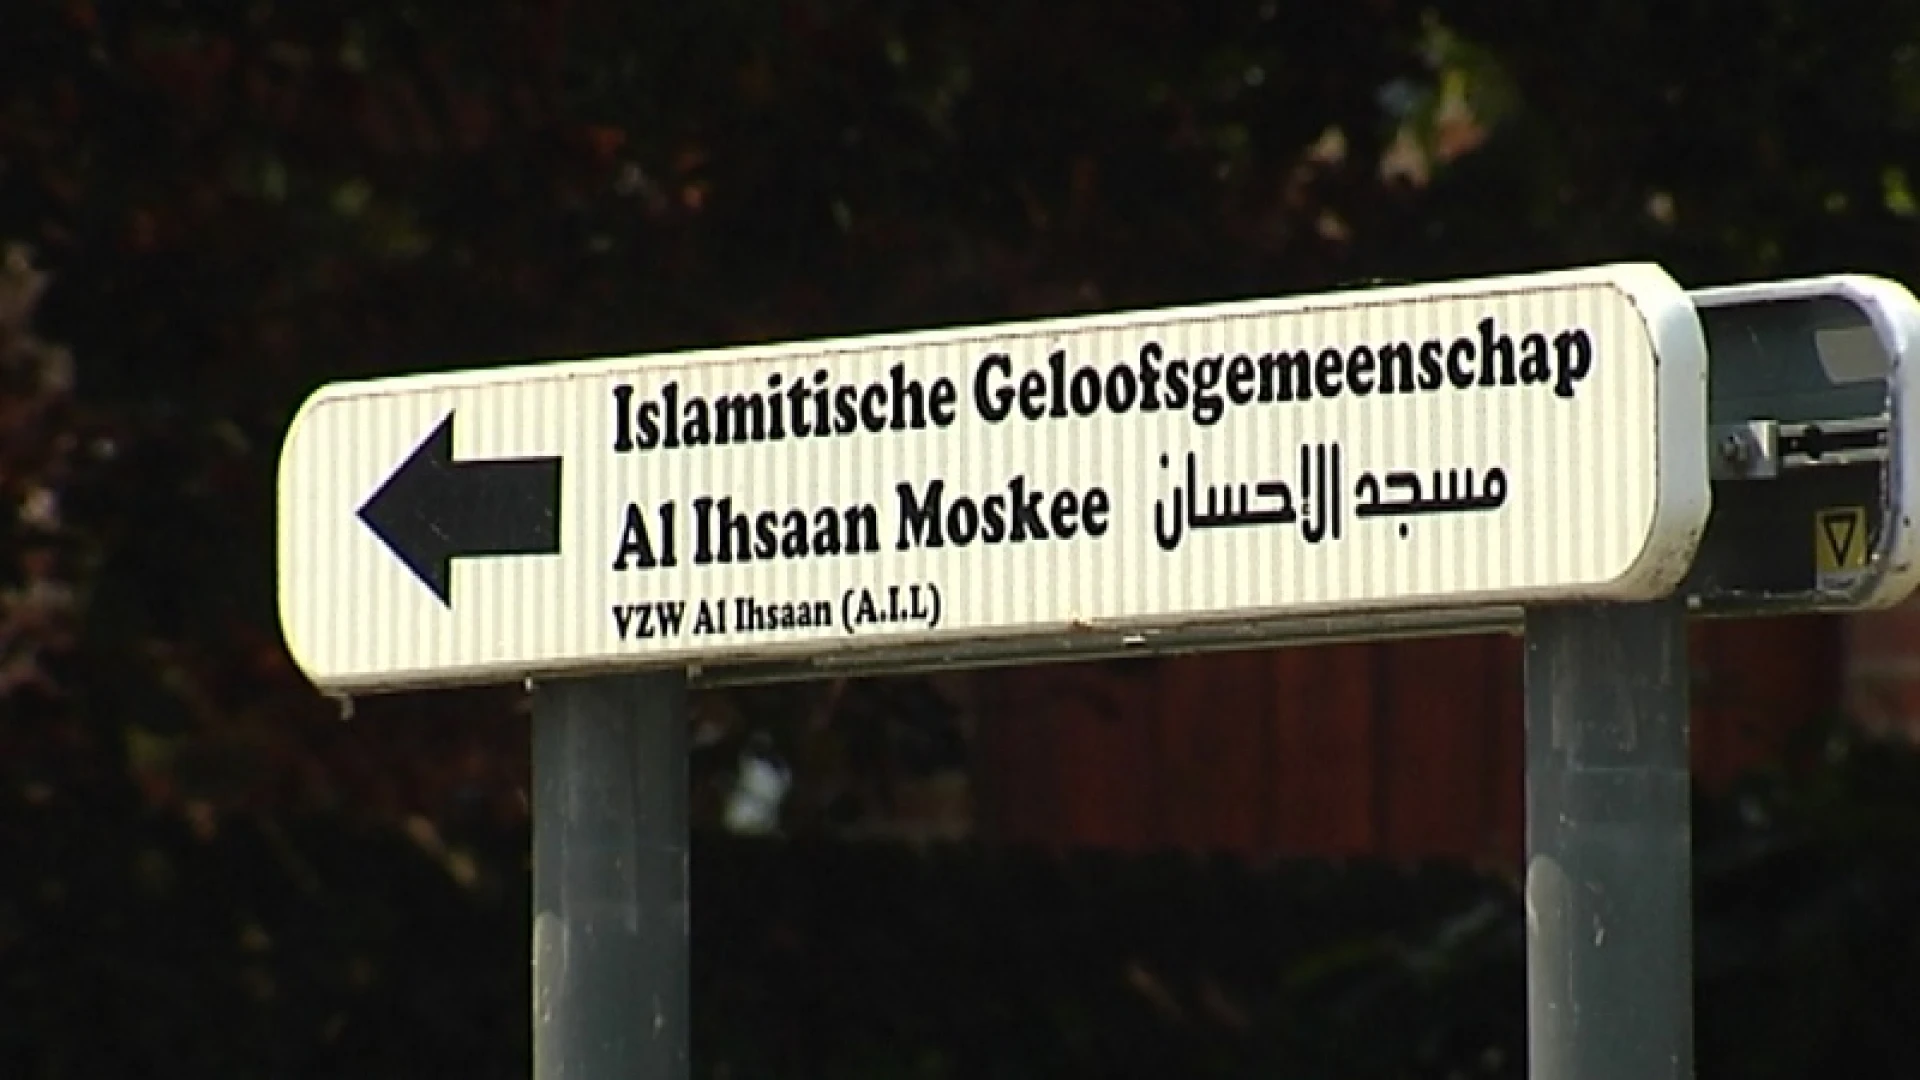 Al Ihsaan-moskee in Leuven behoudt dan toch haar erkenning, maar wordt onder verhoogd toezicht geplaatst